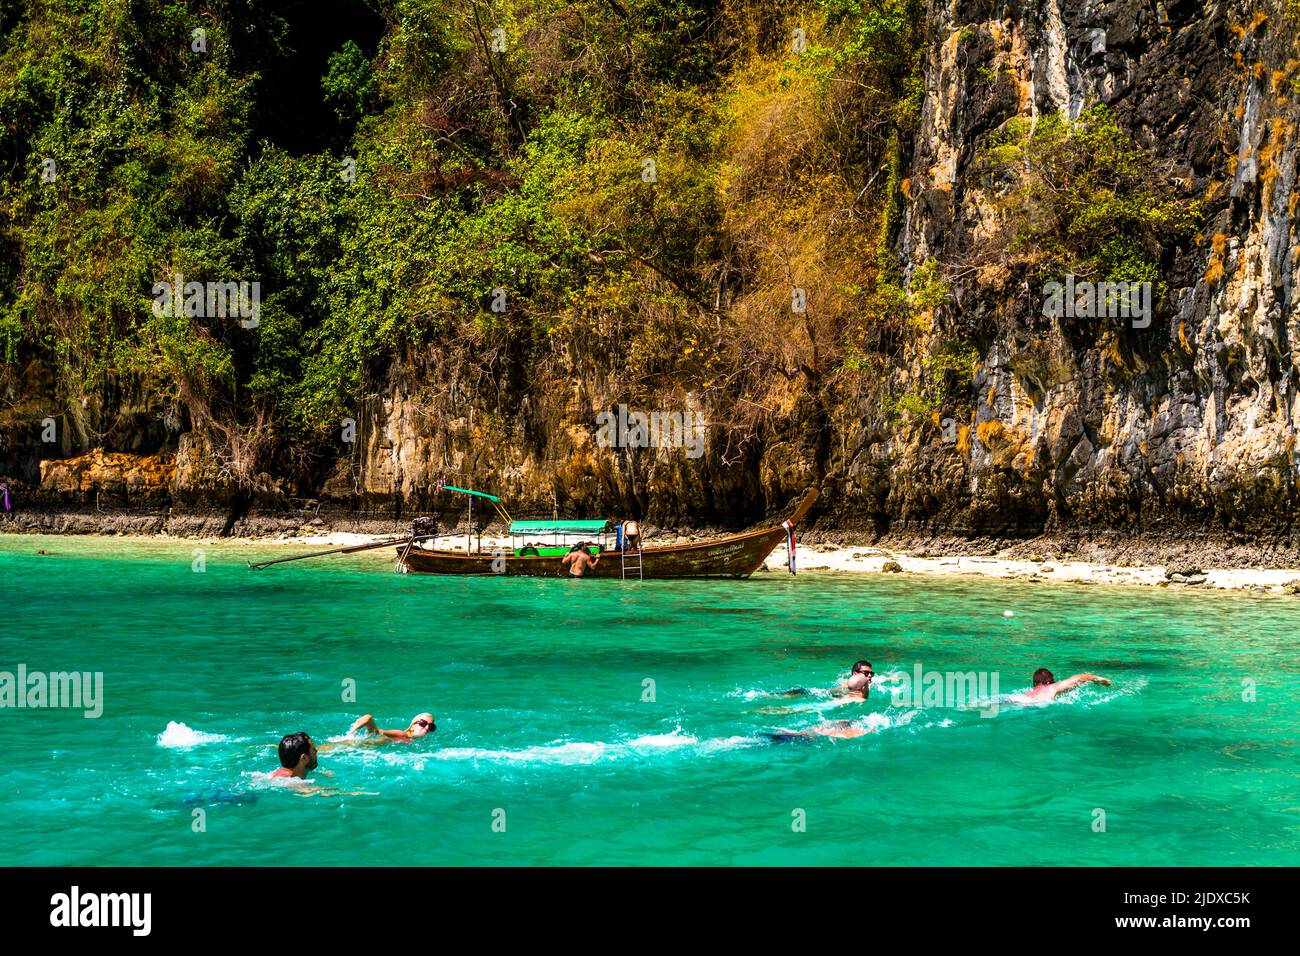 Schwimmer im türkisfarbenen Wasser der thailändischen Phi Phi Inseln. Der Strand und ein großer Felsen sehen aus wie ein Paradies. Stockfoto